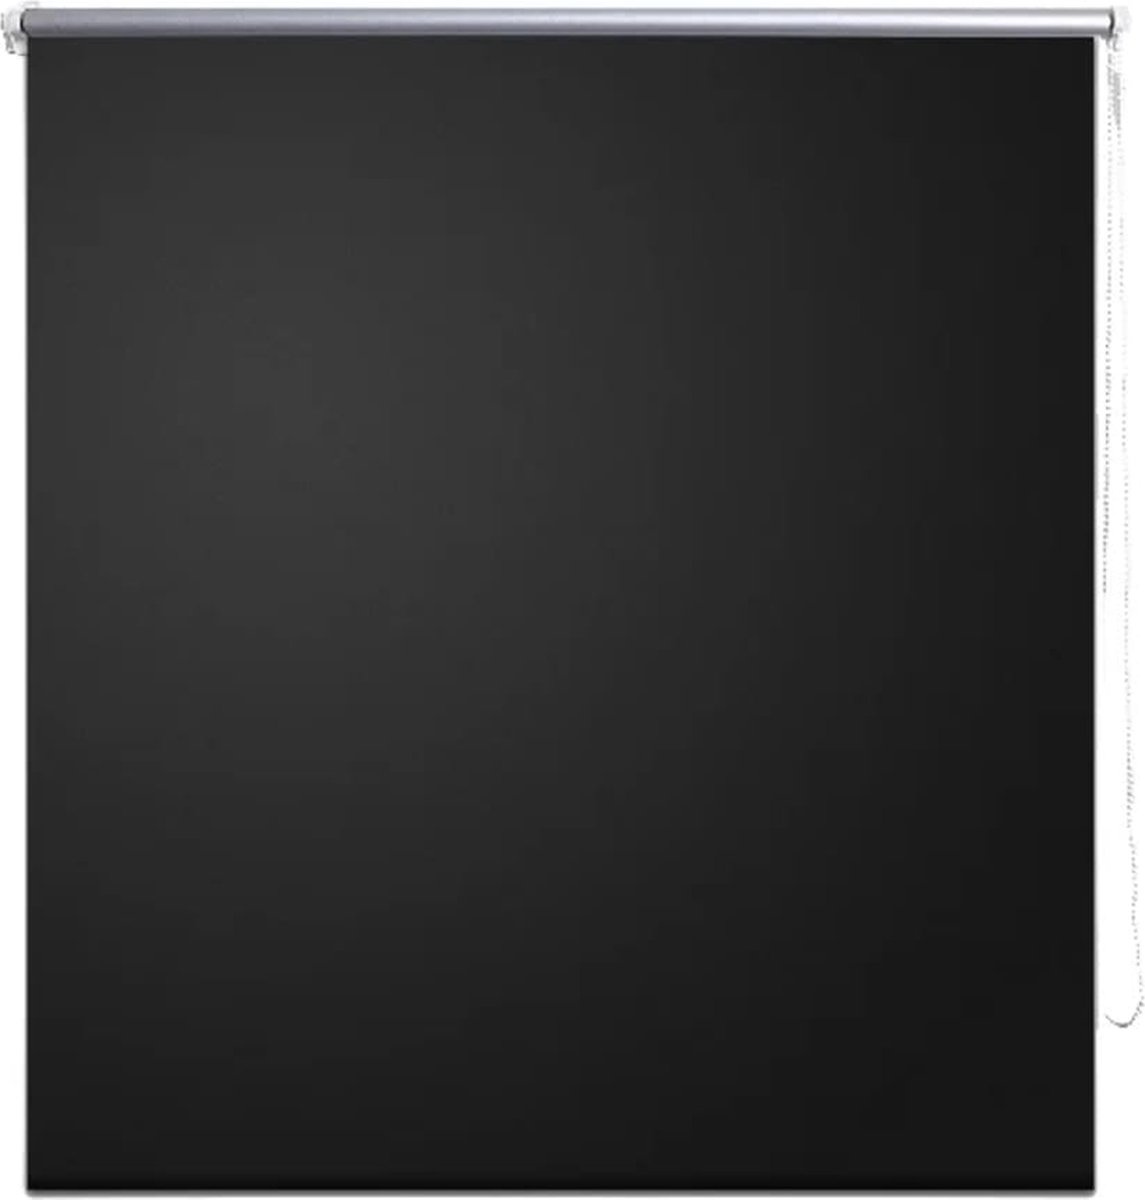 VidaLife Rolgordijn verduisterend 80x175 cm zwart